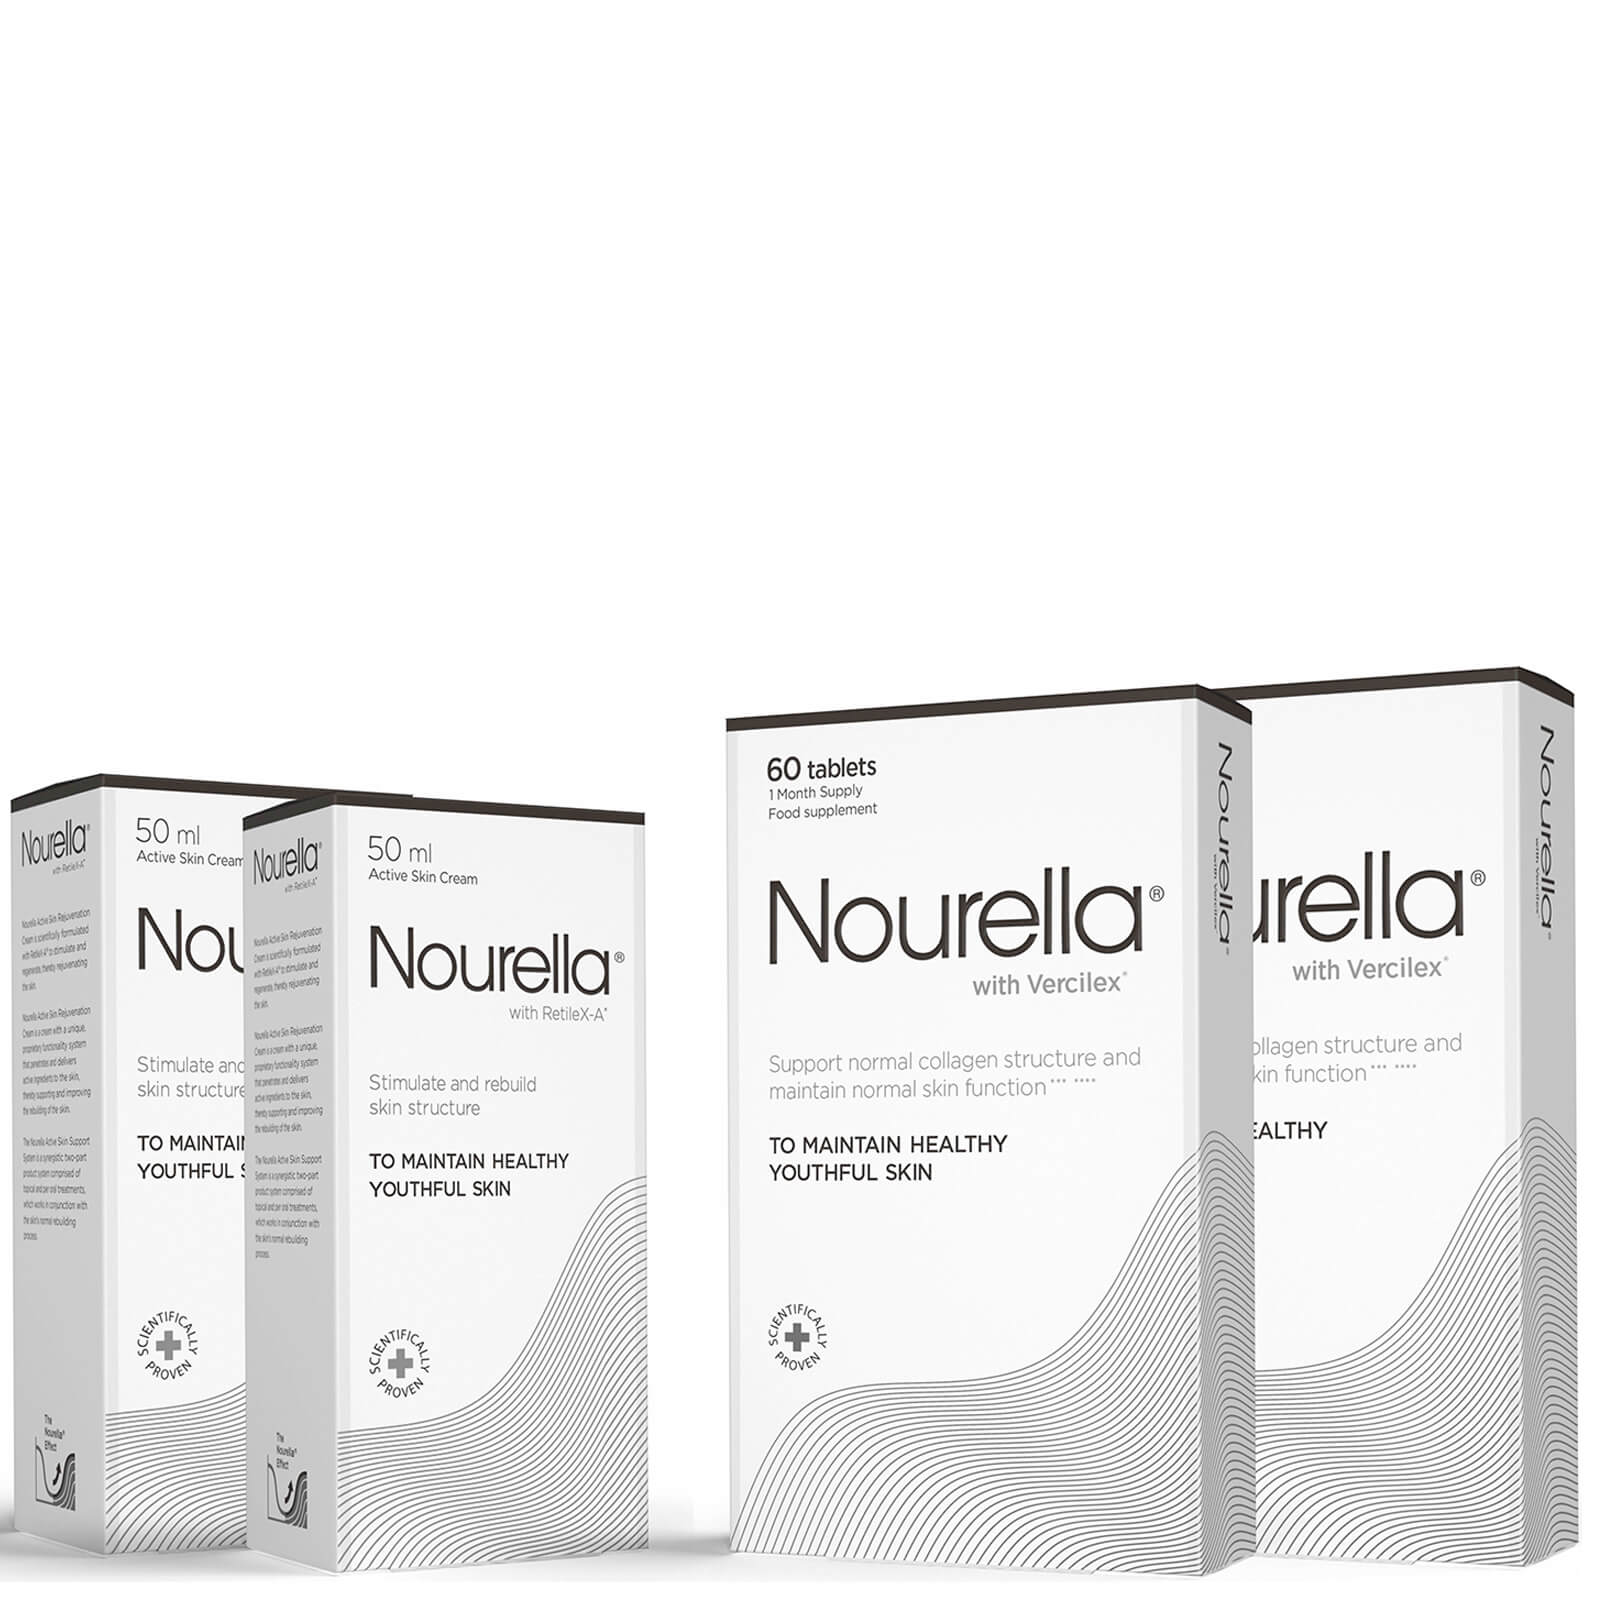 Paquete para 2 meses de Nourella (2 x 60 comprimidos y 2 cremas x 50 ml)